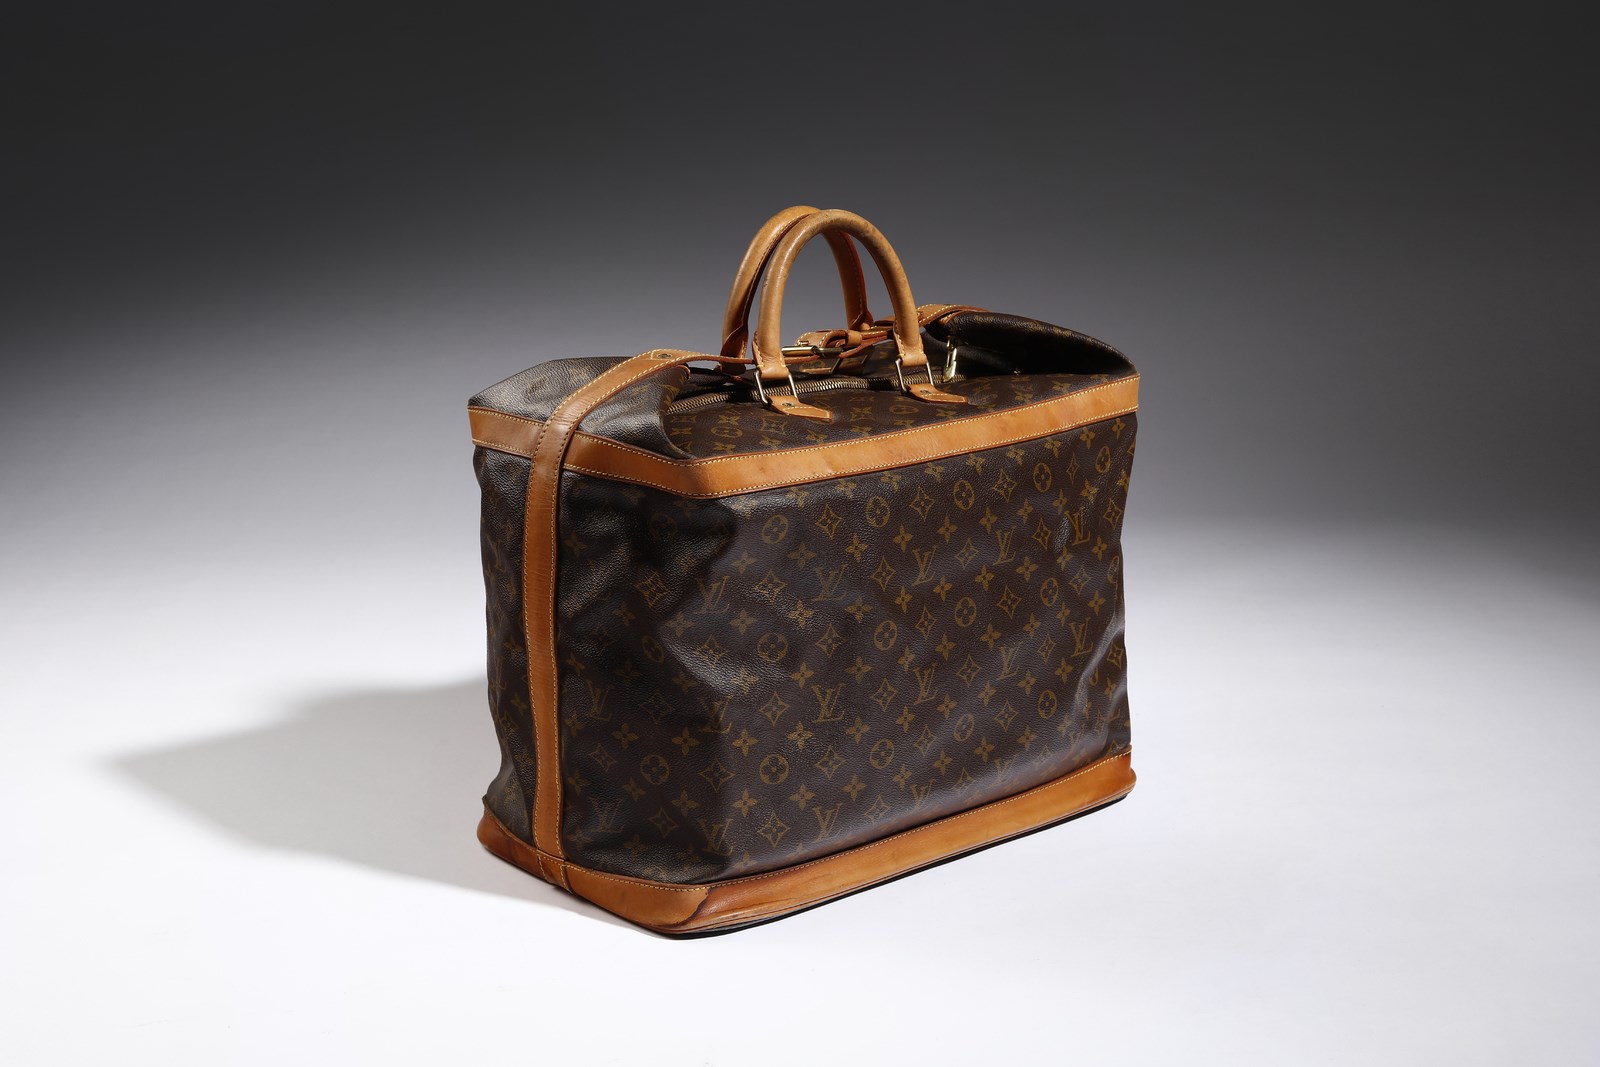 Sold at Auction: Vintage Louis Vuitton Monogram Duffel Bag